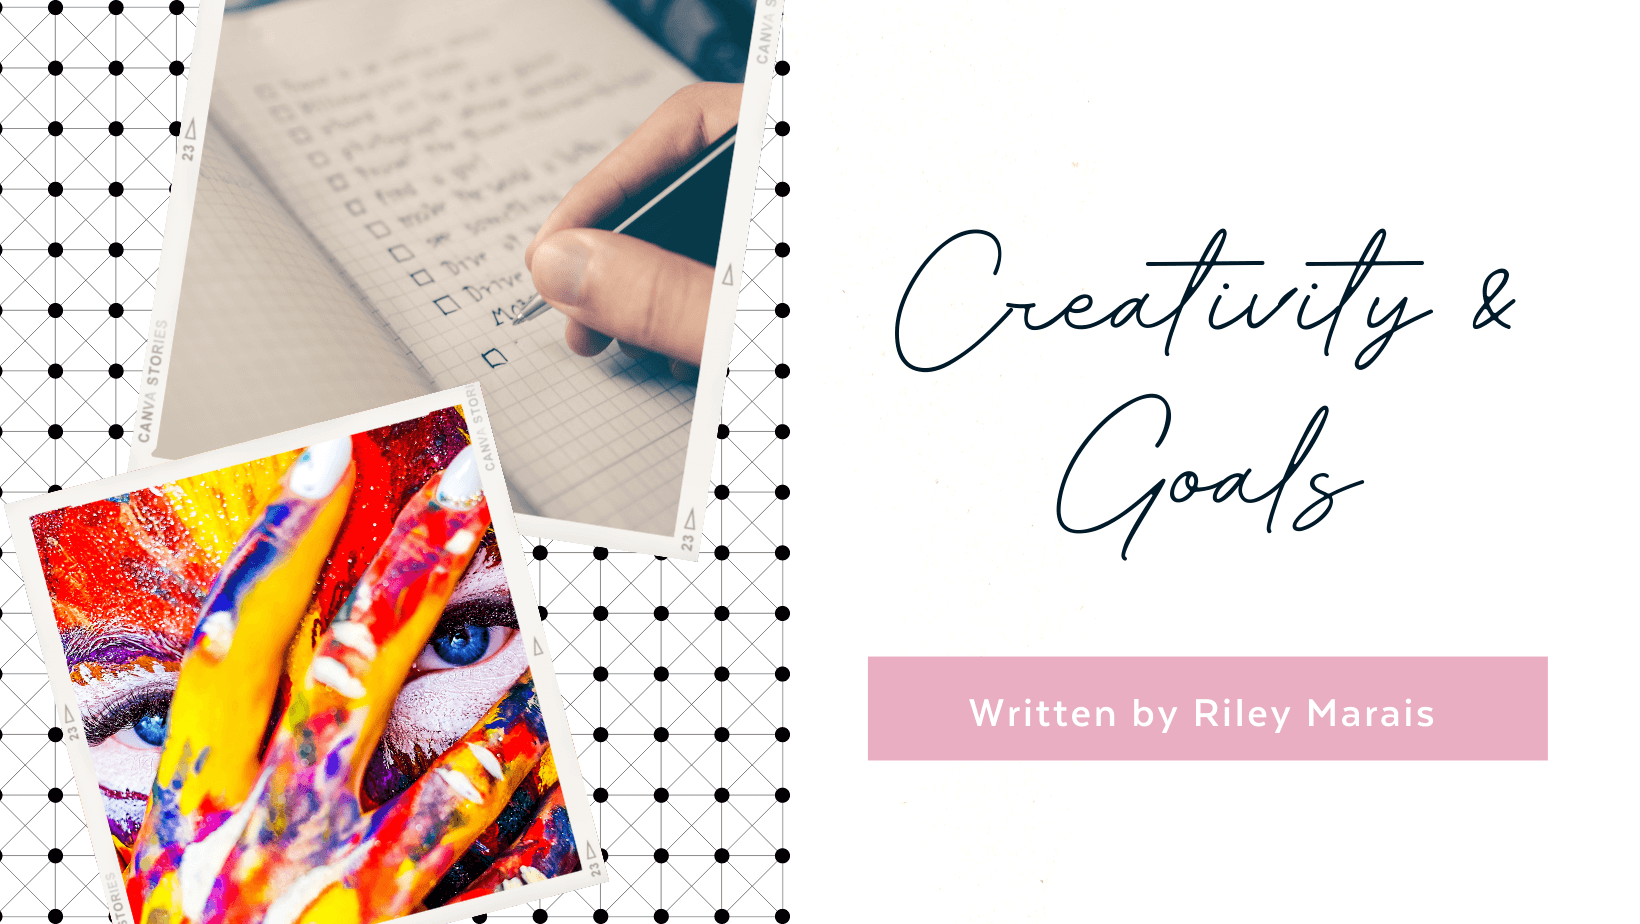 Creativity & Goals